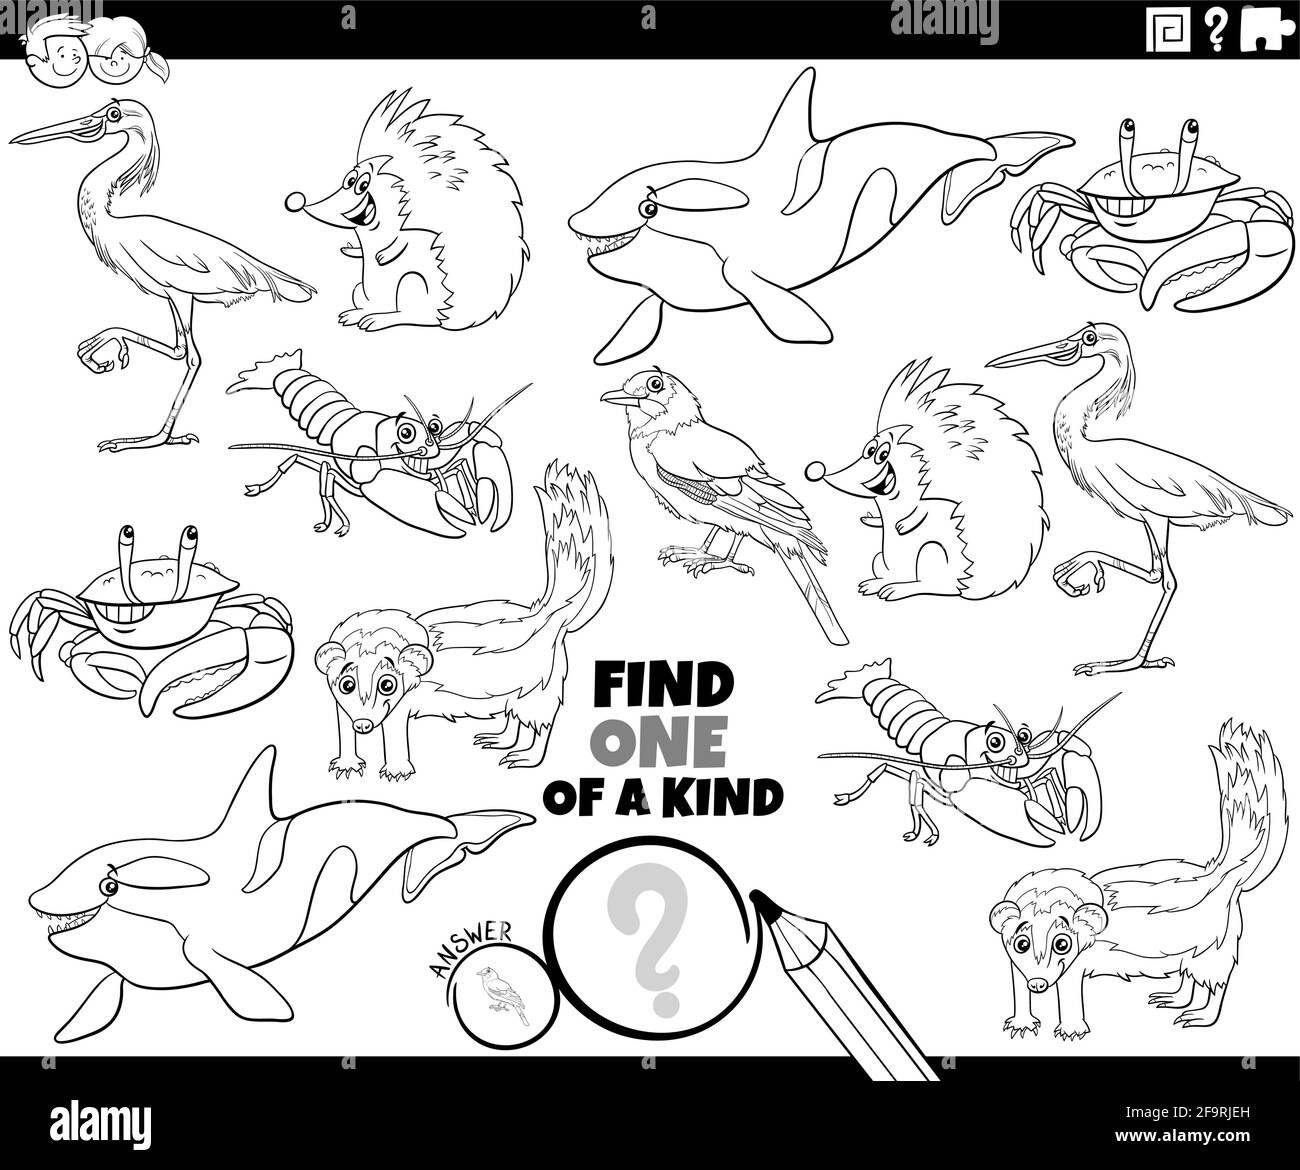 Illustration de dessin animé noir et blanc de Find One of a genre image jeu éducatif avec des caractères d'animal sauvage livre de coloriage page Illustration de Vecteur